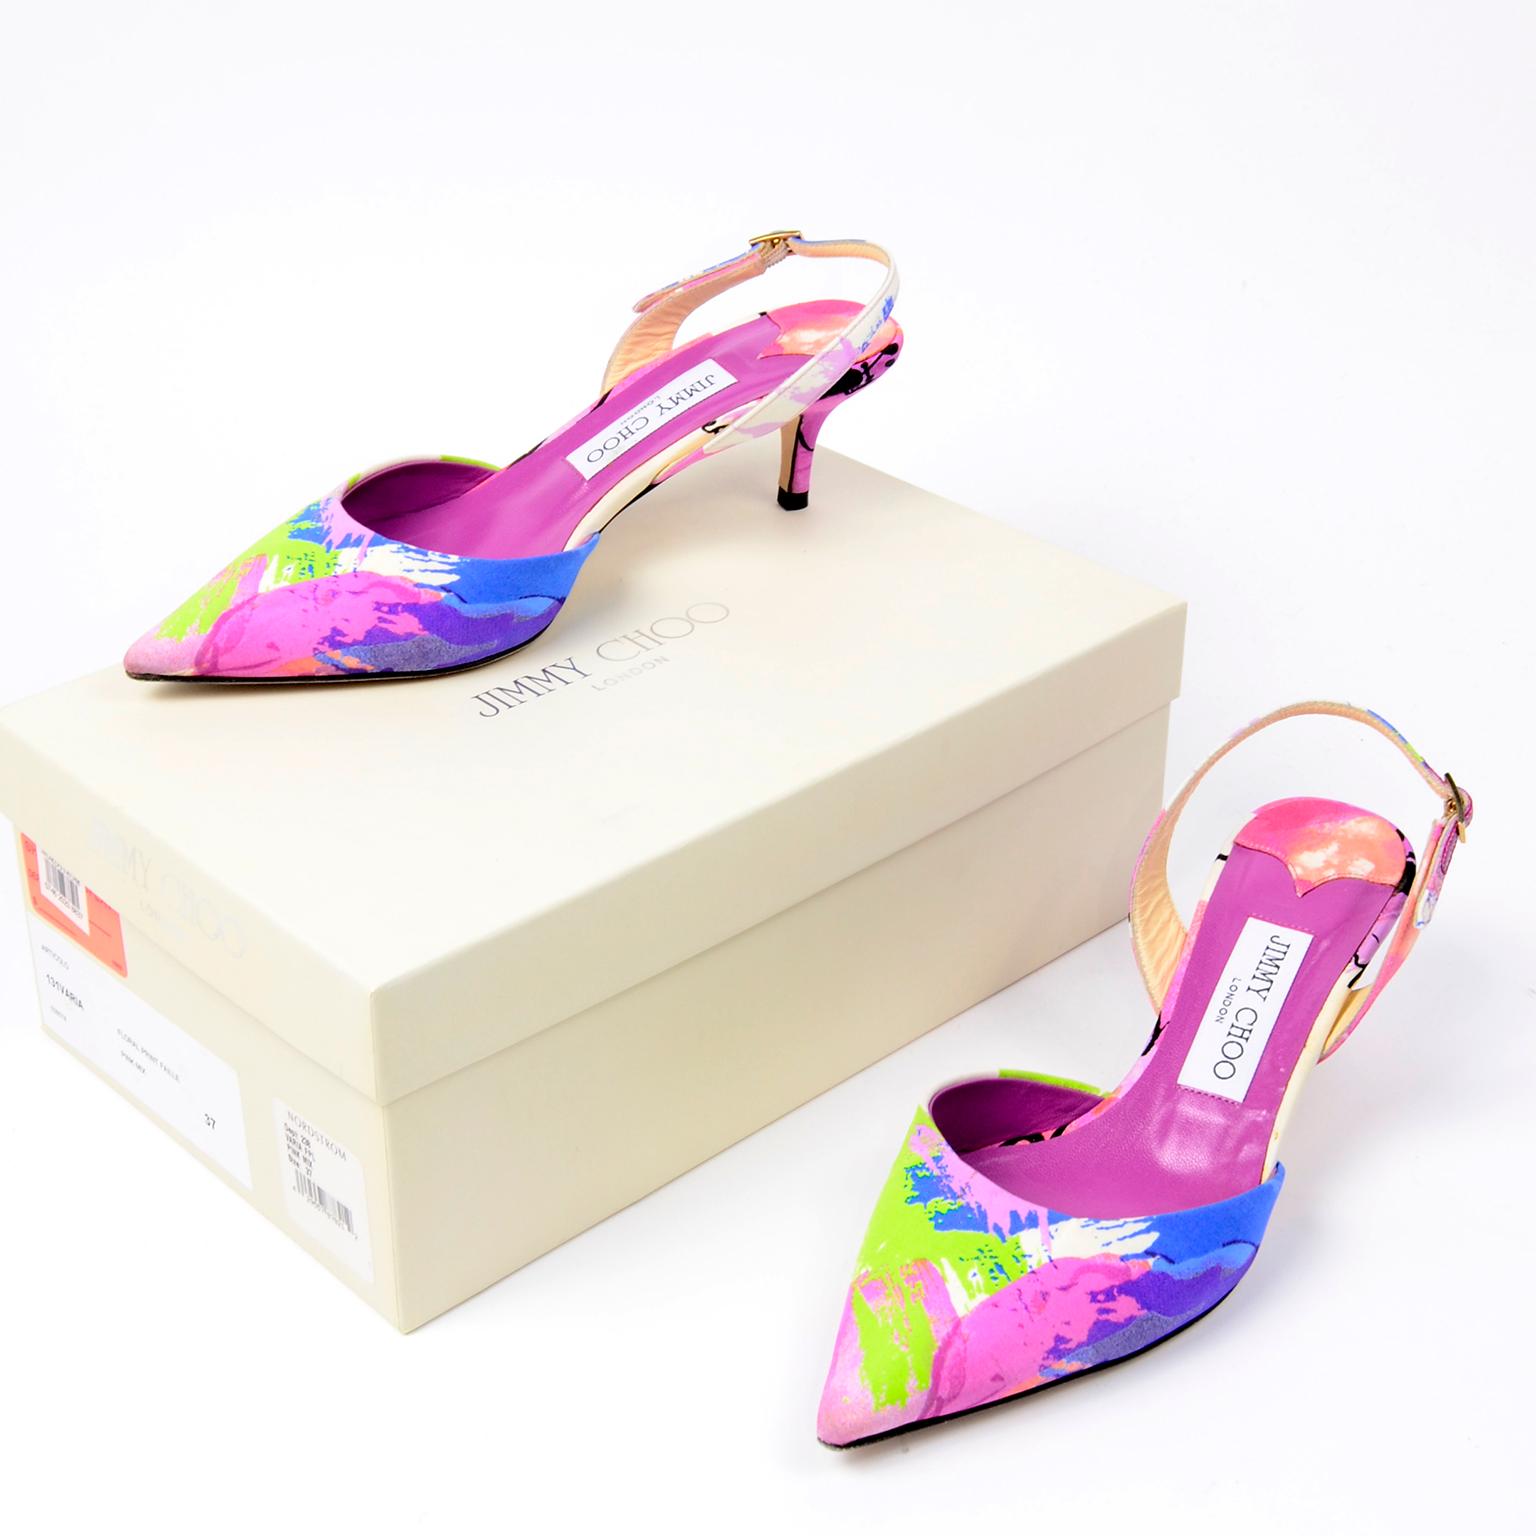 Ces jolies chaussures Jimmy Choo Slingback sont pleines de couleurs ! L'imprimé floral abstrait est dans les tons de vert citron:: violet:: rose et bleu. Les chaussures ont été fabriquées en Italie et sont livrées avec leur boîte d'origine.Ce sont